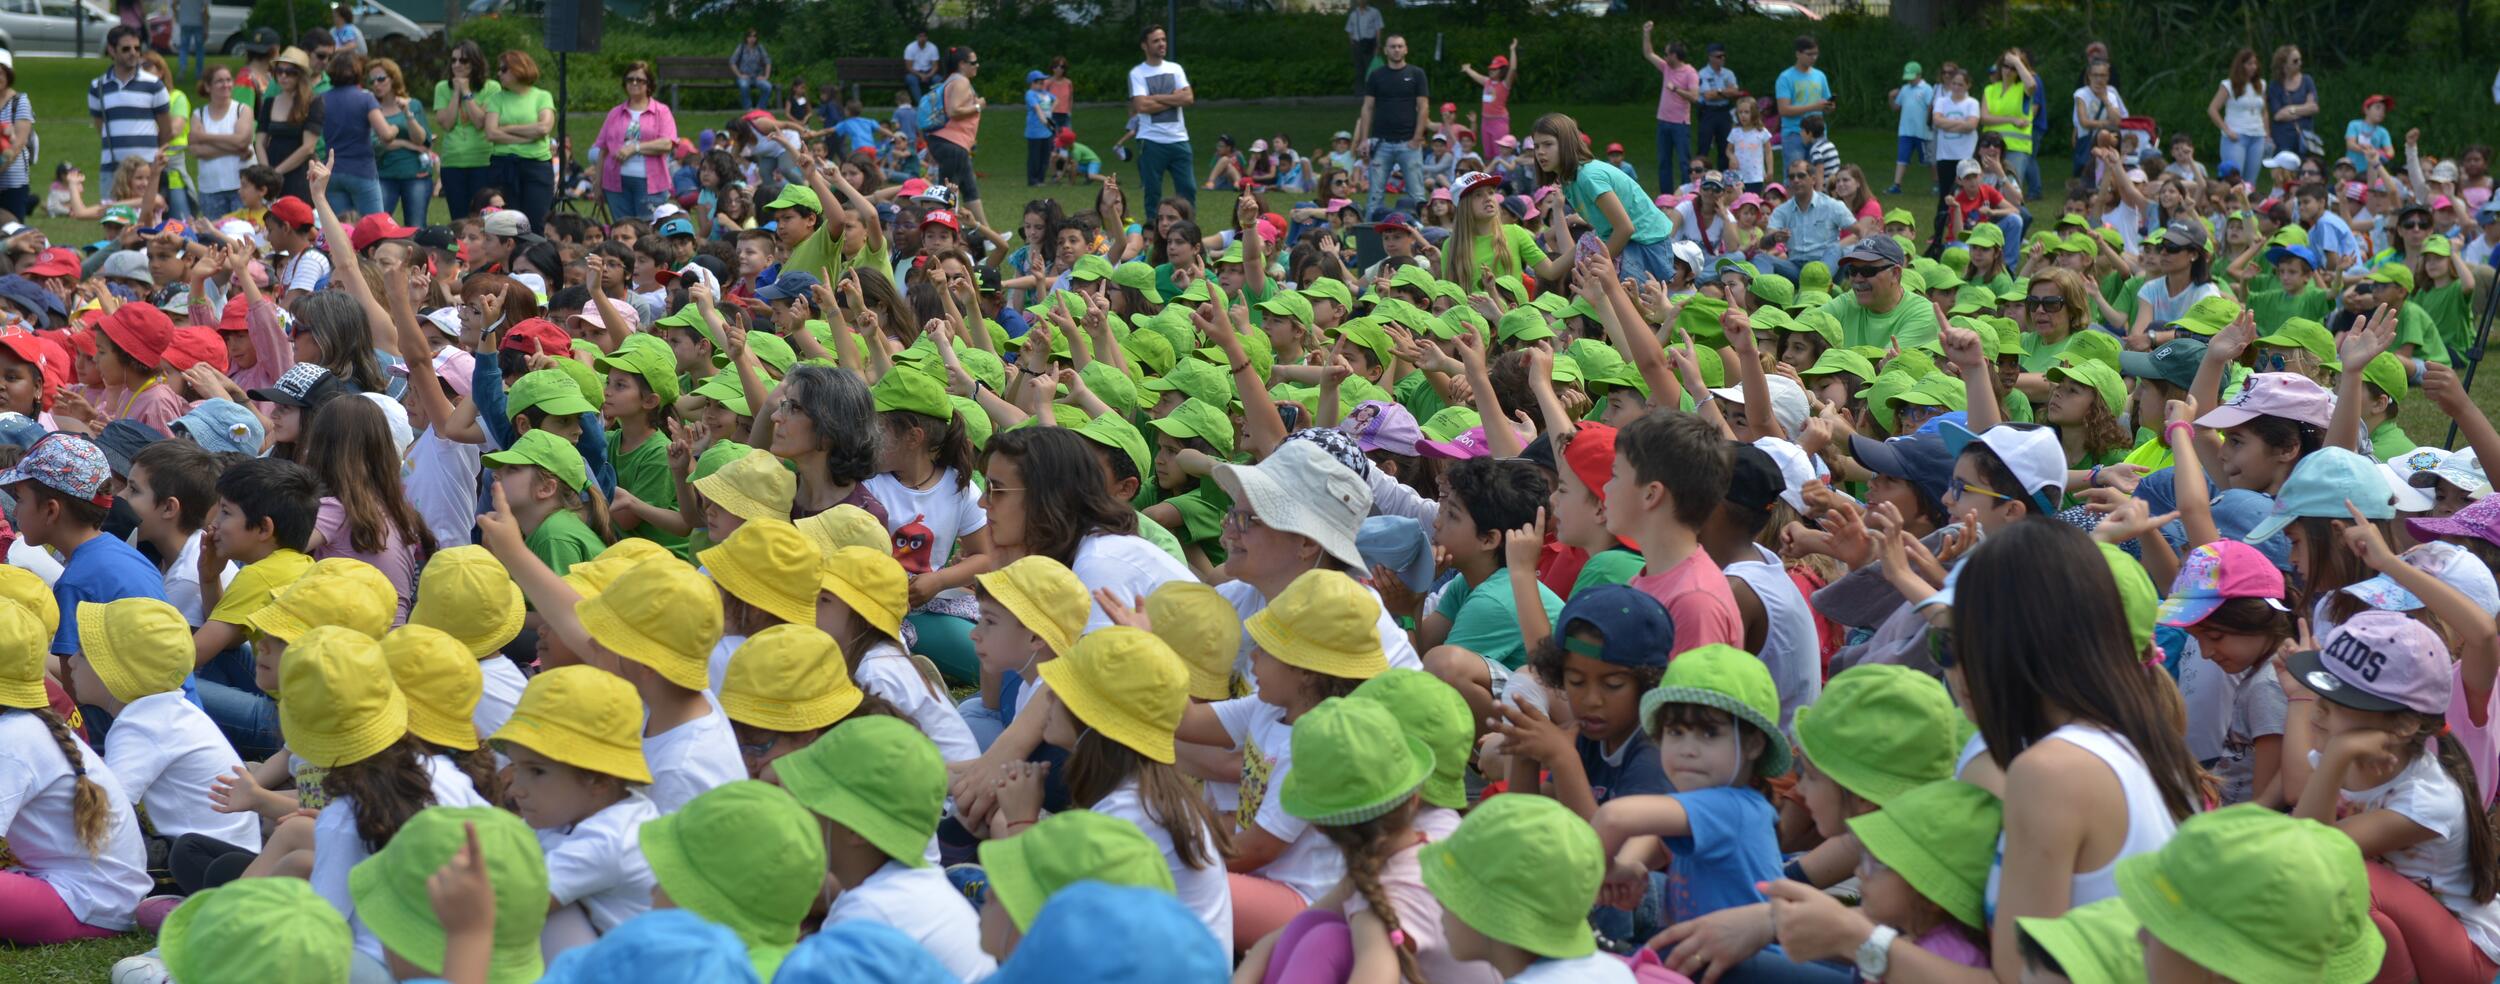 Milhares de Crianças no Parque Municipal